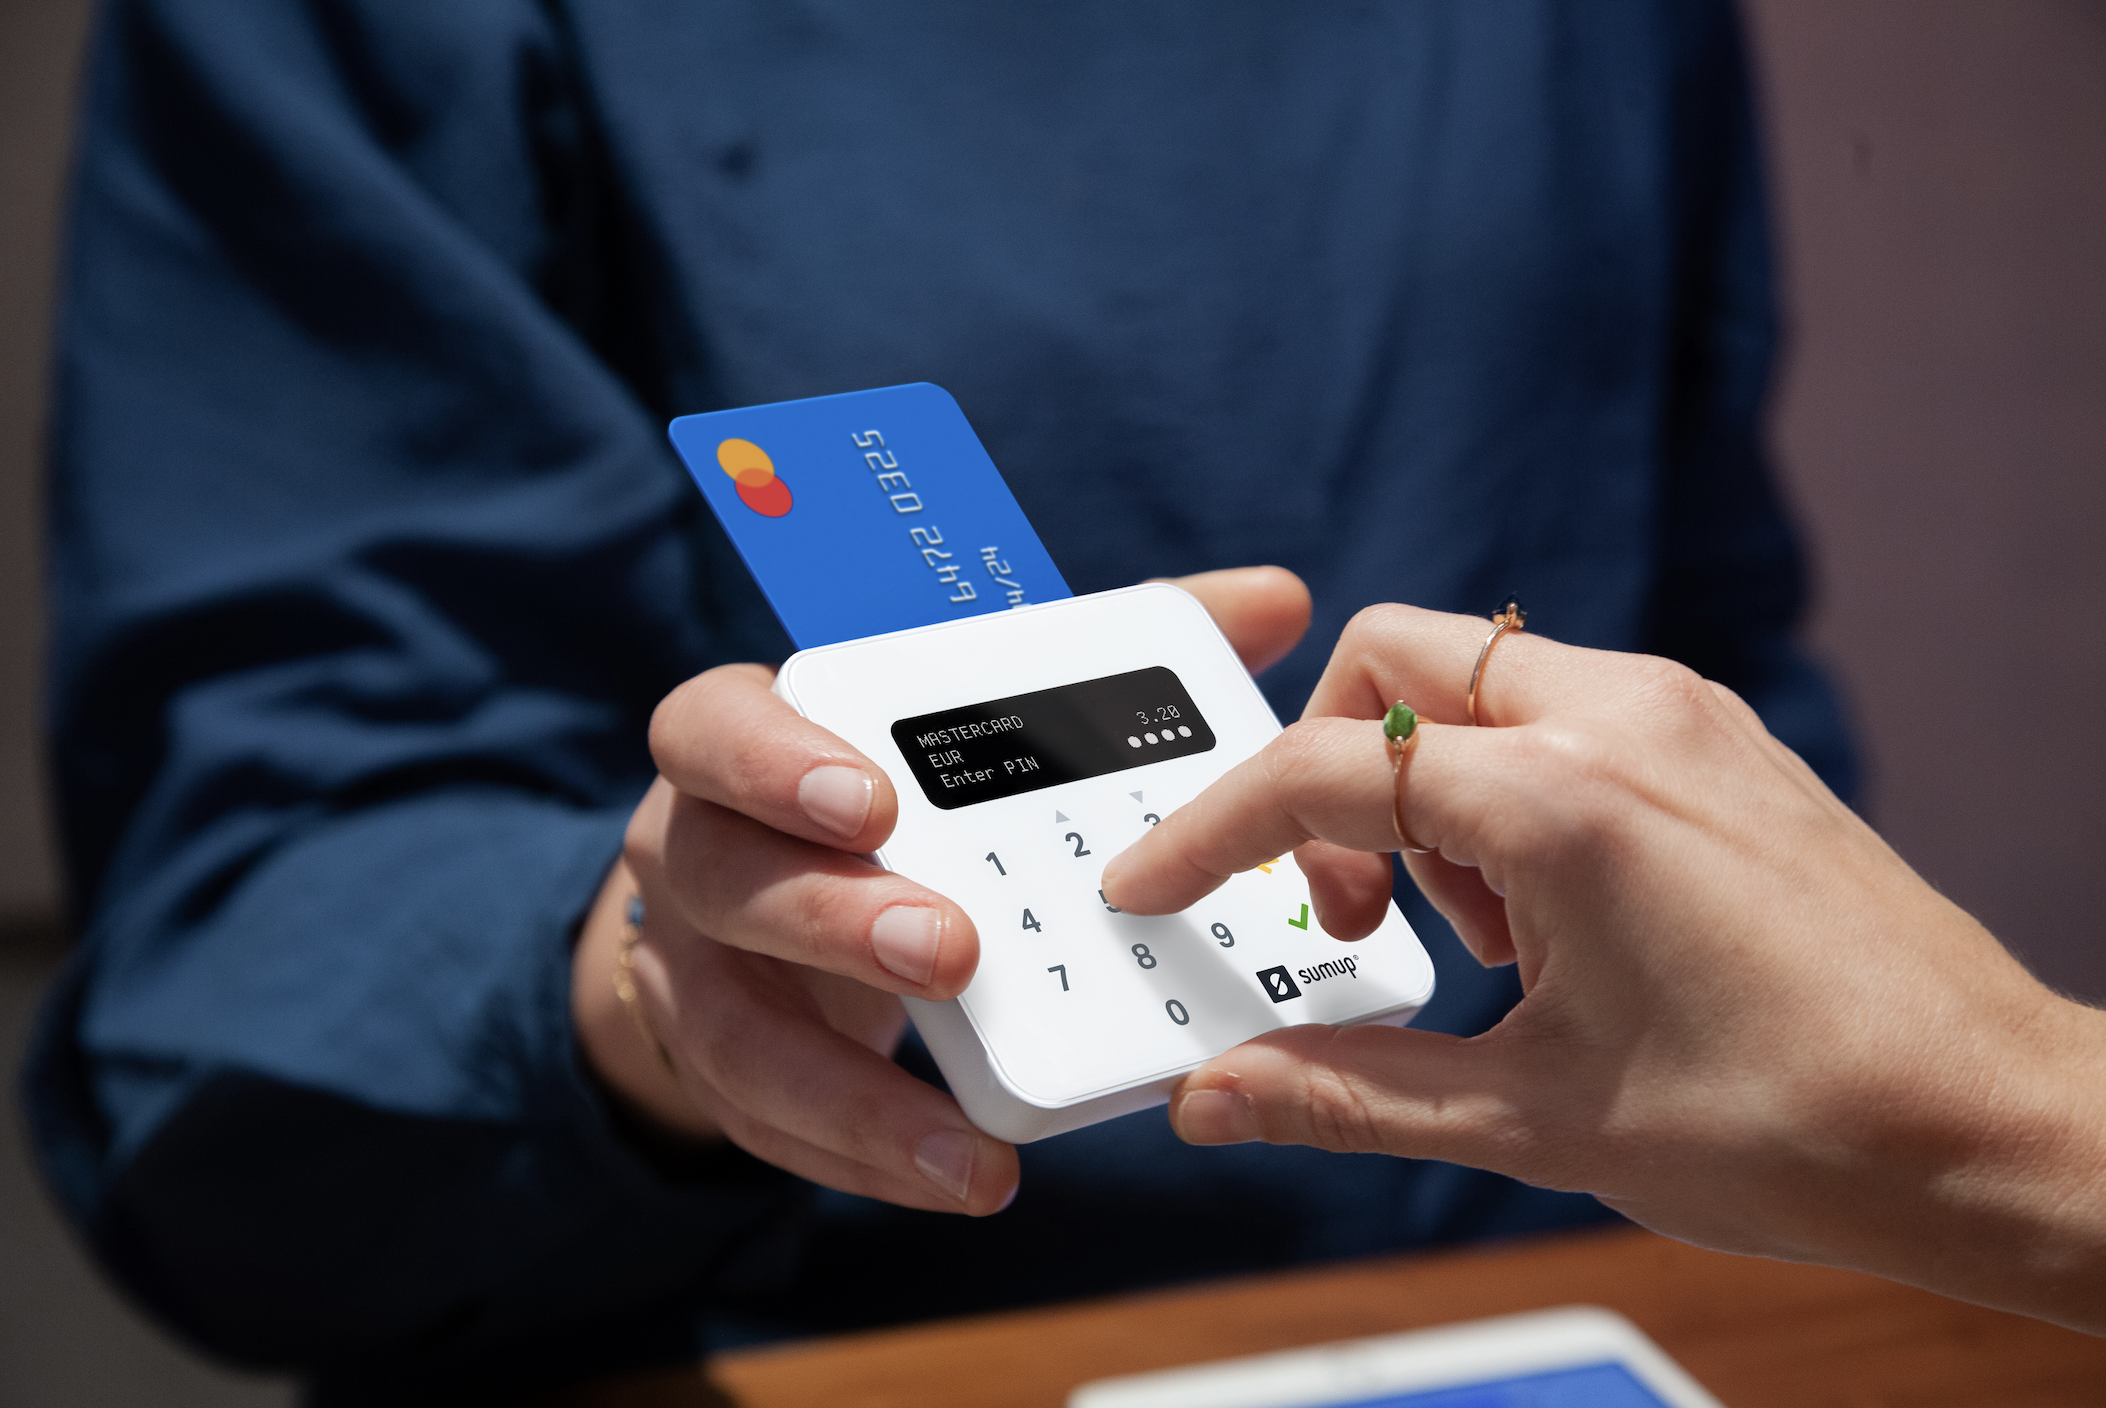 Terminal de paiement – Paiements sécurisés par carte bancaire